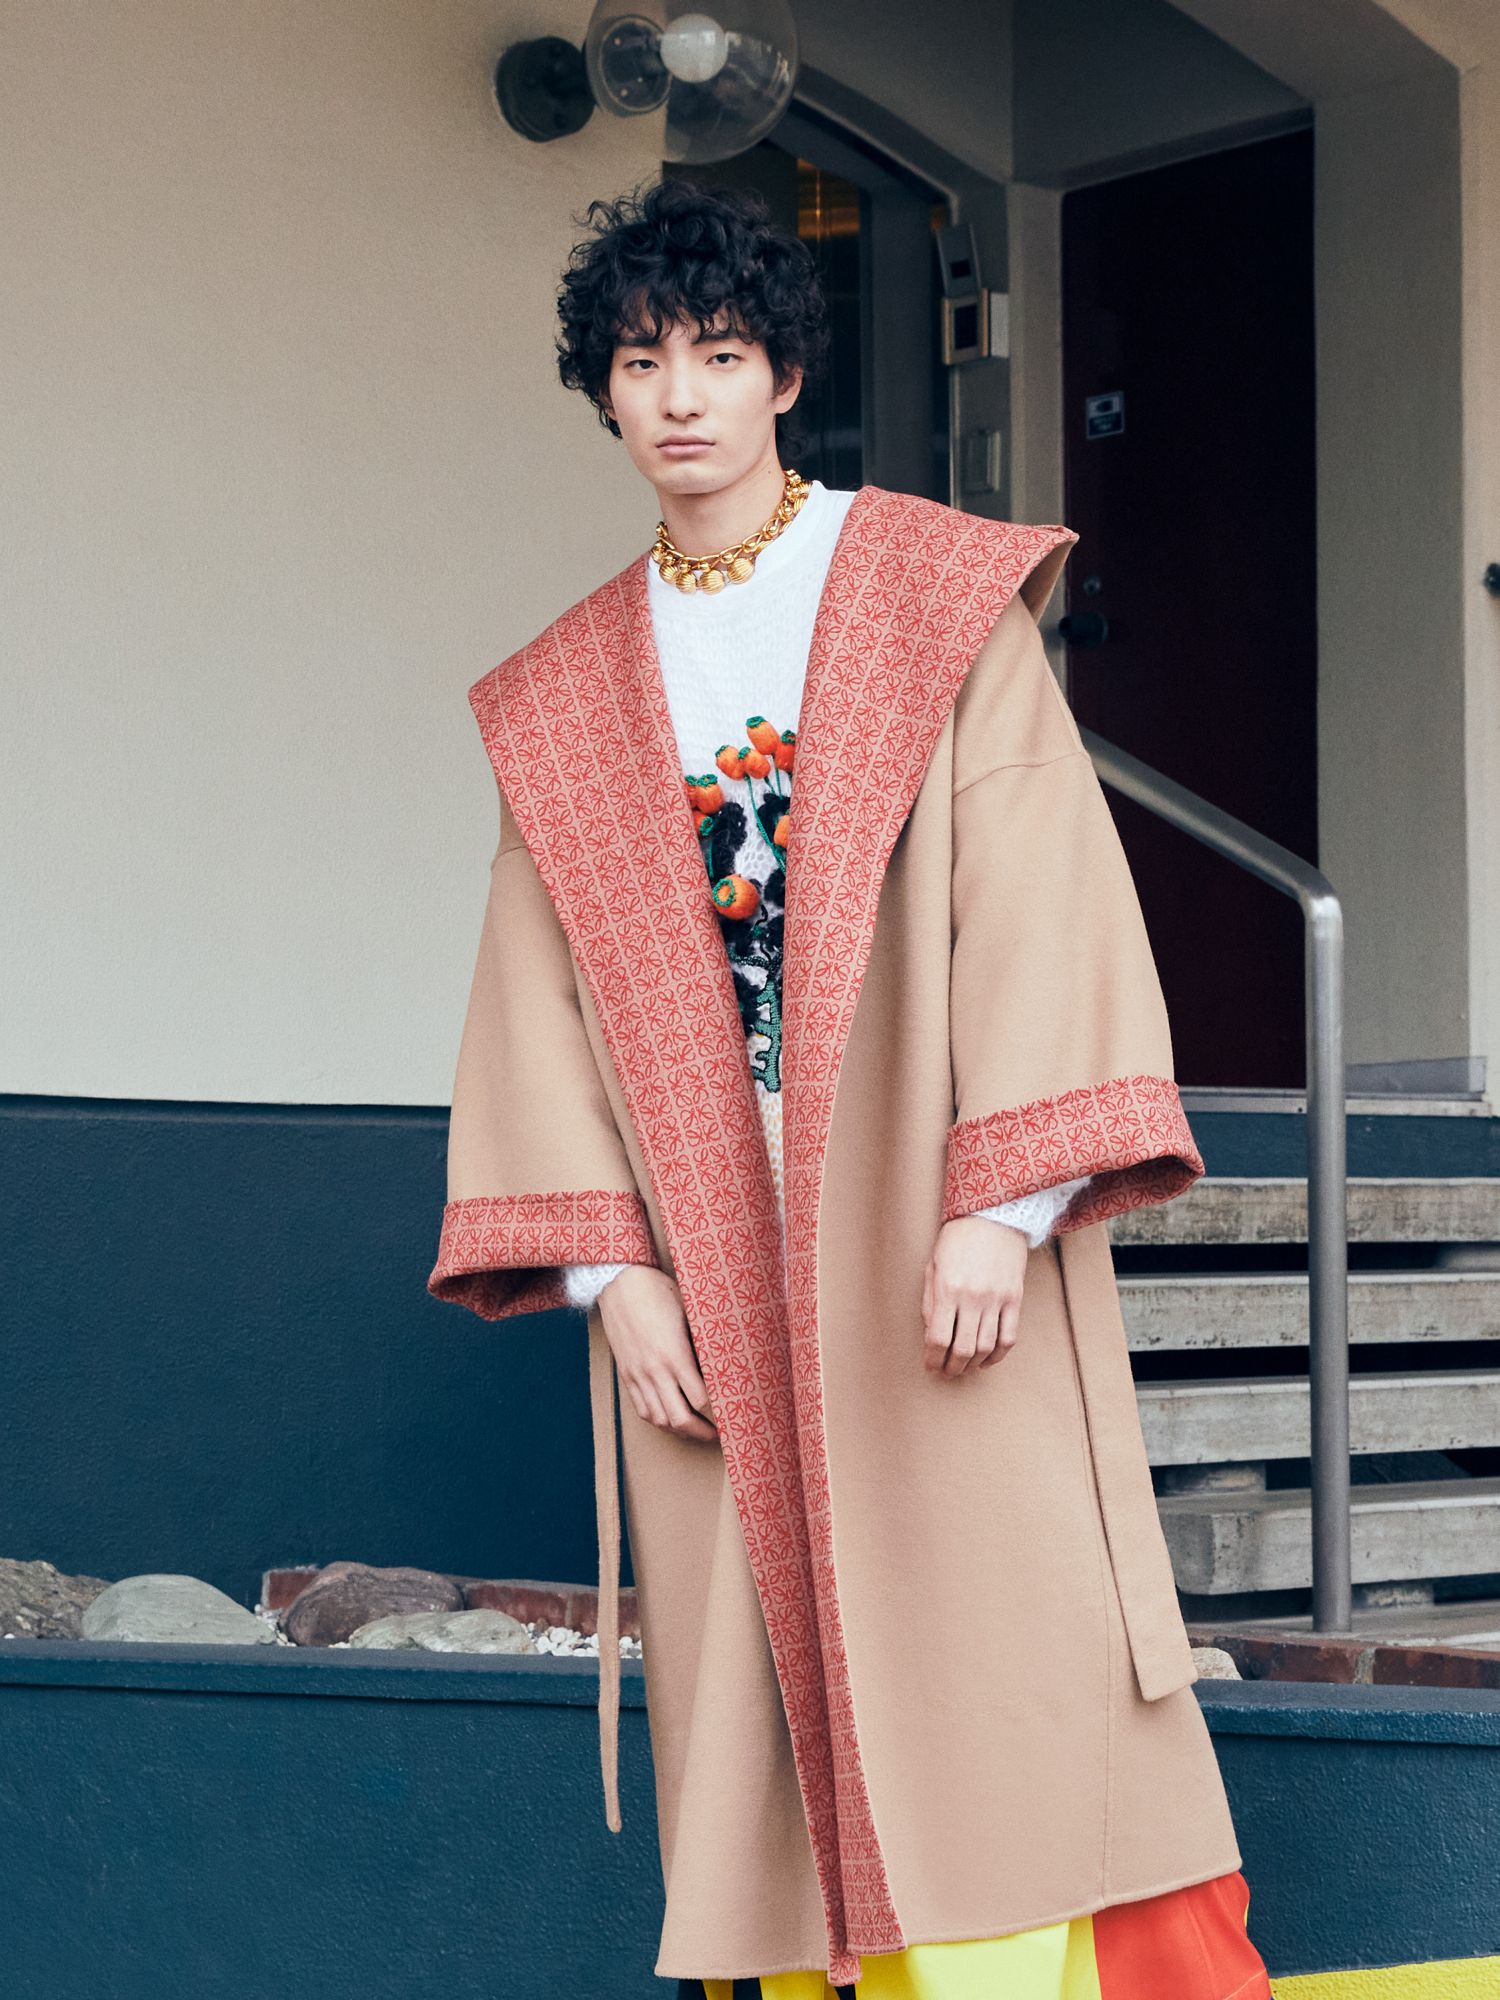 夏木マリや中村アンを起用 「LOEWE（ロエベ）」、2022春夏プレコレクションのコート キャンペーンのビジュアルを発表 | fashion bible 宮田 理江